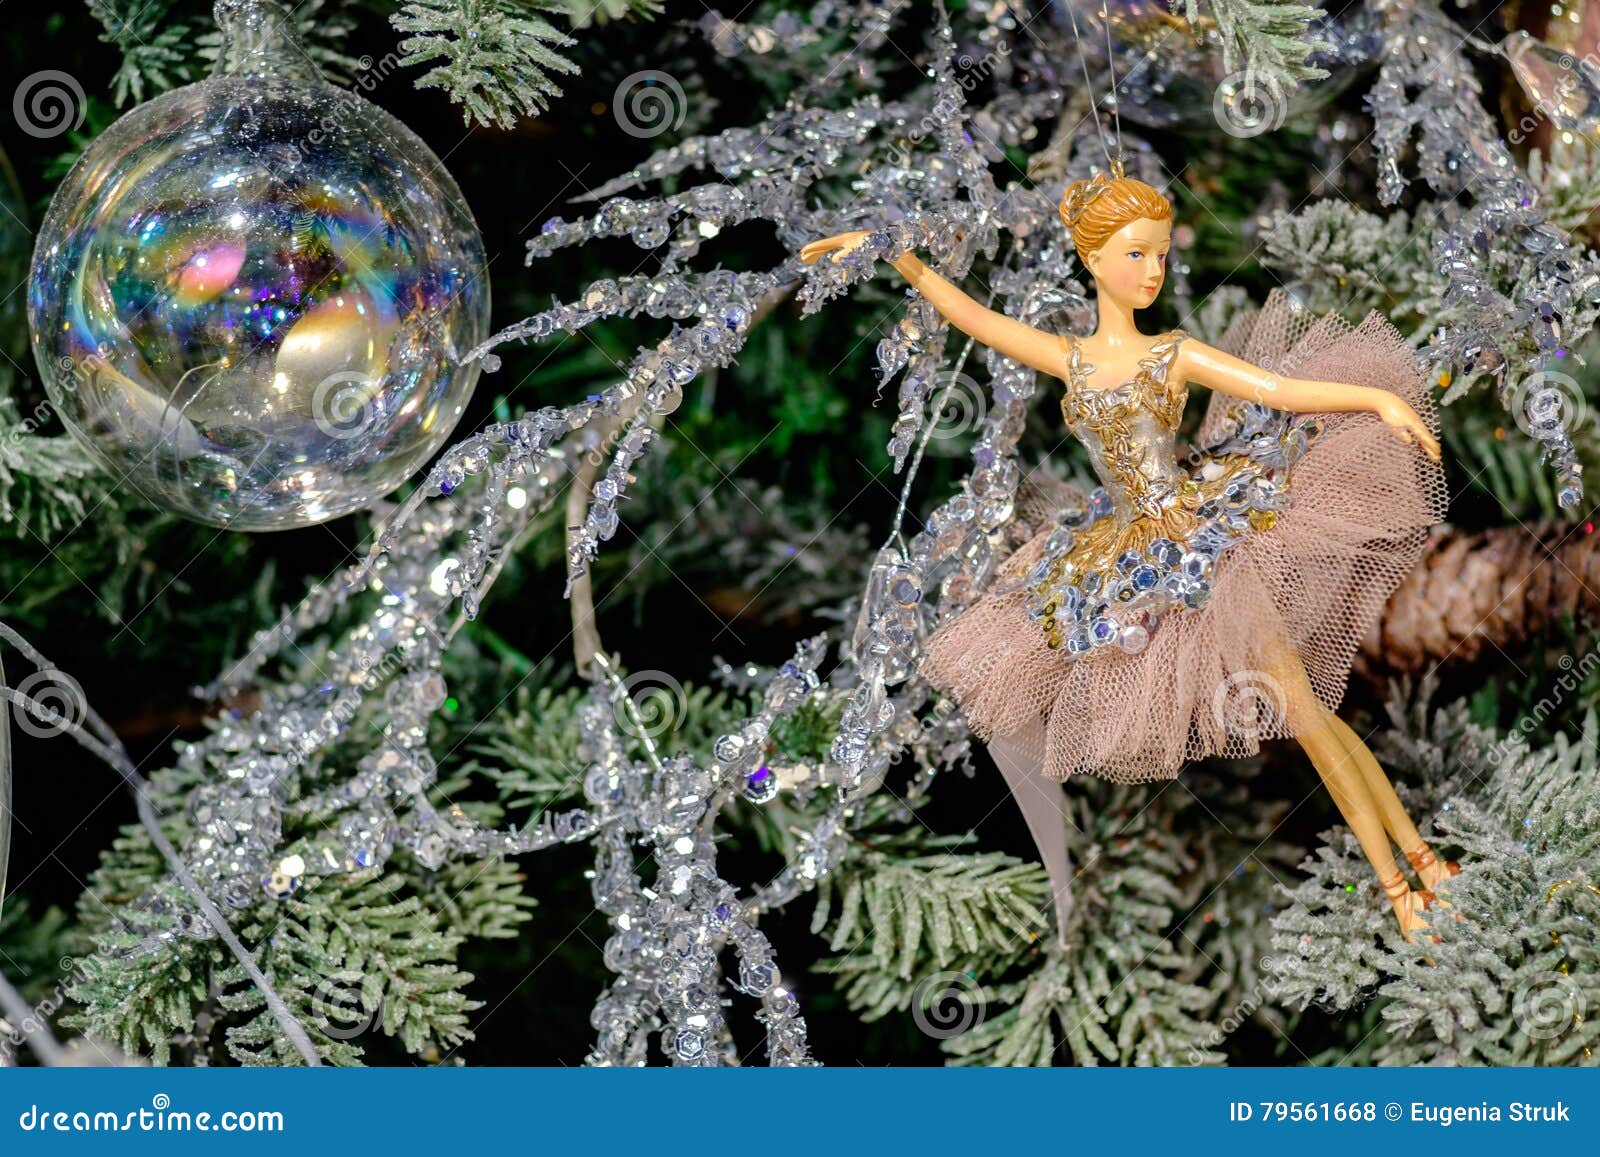 Decorazioni Natalizie Ballerine.Decorazione Di Natale Del Giocattolo Della Ballerina Fotografia Stock Immagine Di Balletto Sfera 79561668